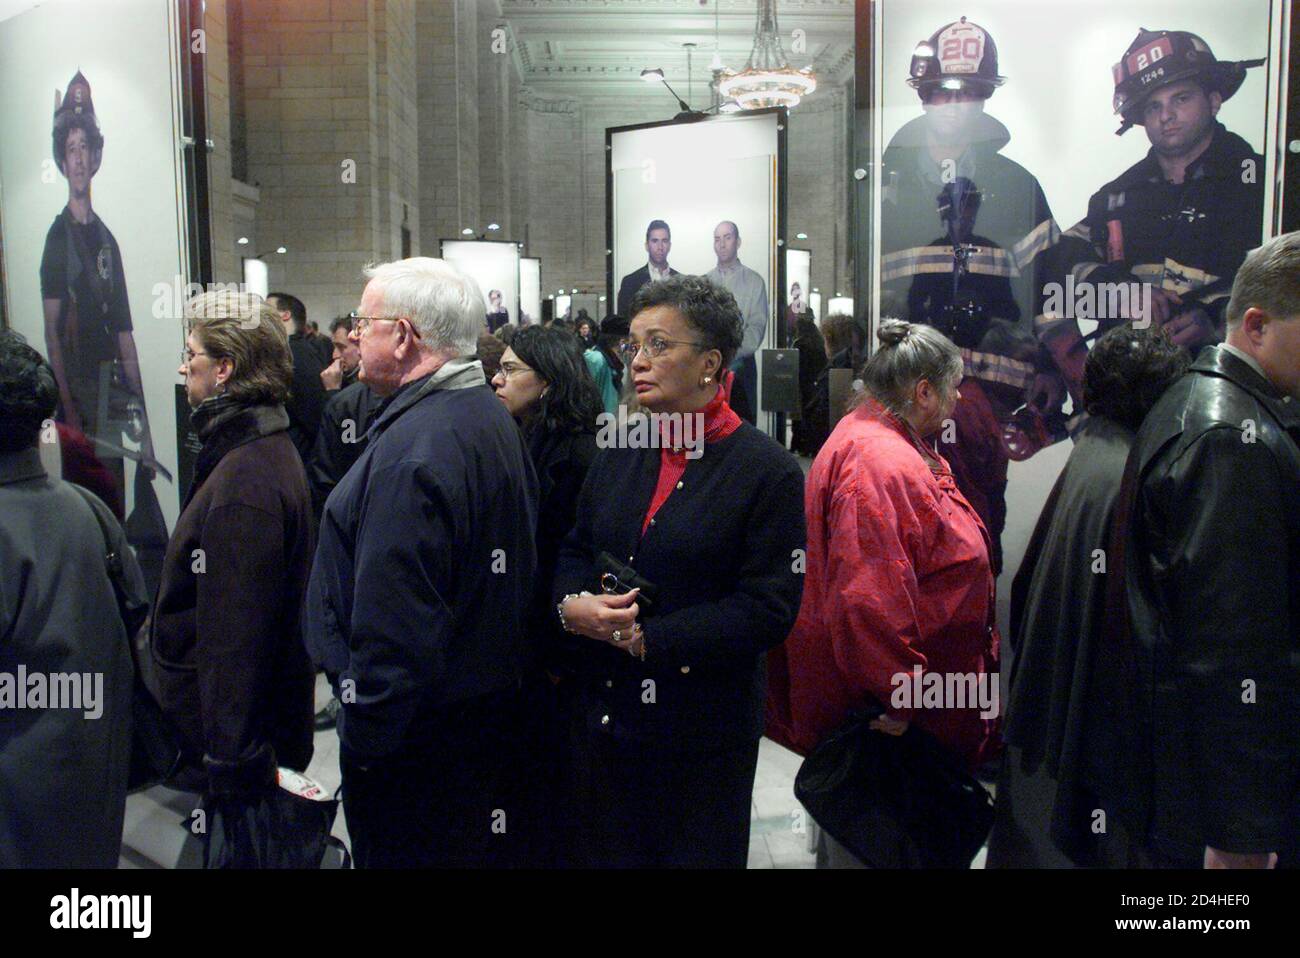 Fotos a tamaño real de los bomberos y otros asociados con la tragedia del  World Trade Center se ven en una nueva exposición en Grand Central Station  en Nueva York el 9